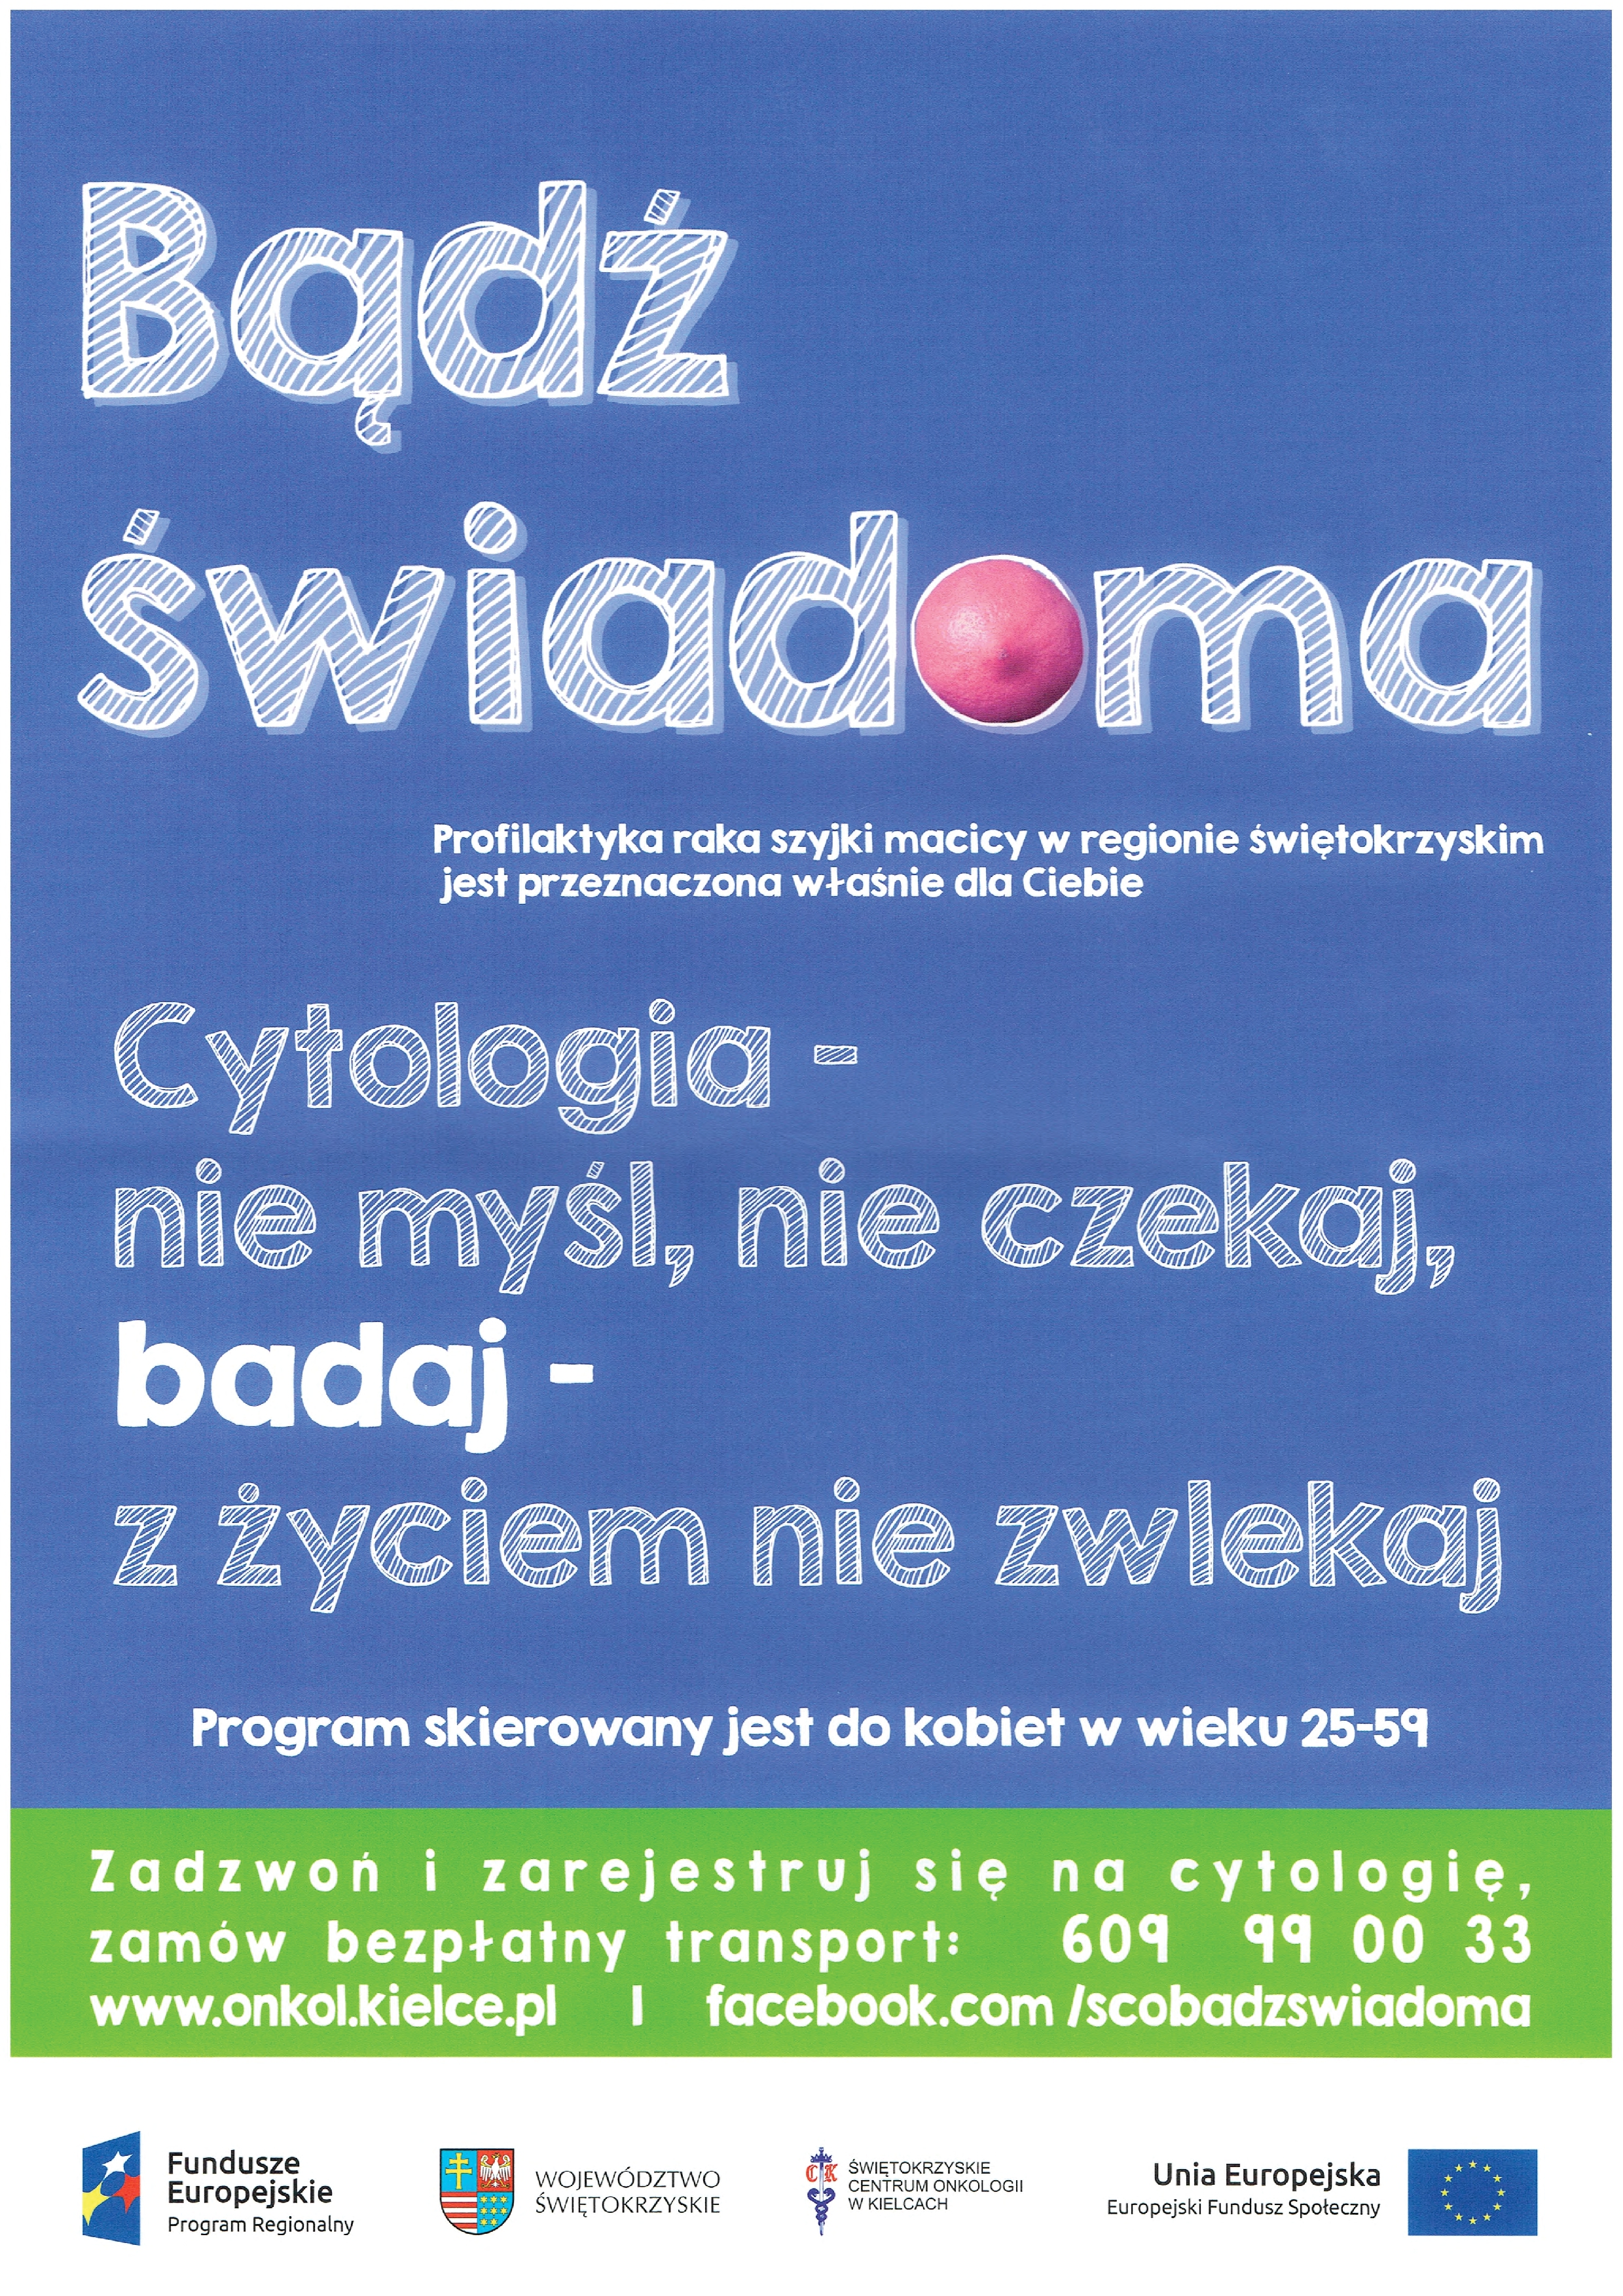 „Być świadomą kobietą- wsparcie profilaktyki raka szyjki macicy&#8221;, Miejsko-Gminny Ośrodek Pomocy Społecznej w Łopusznie